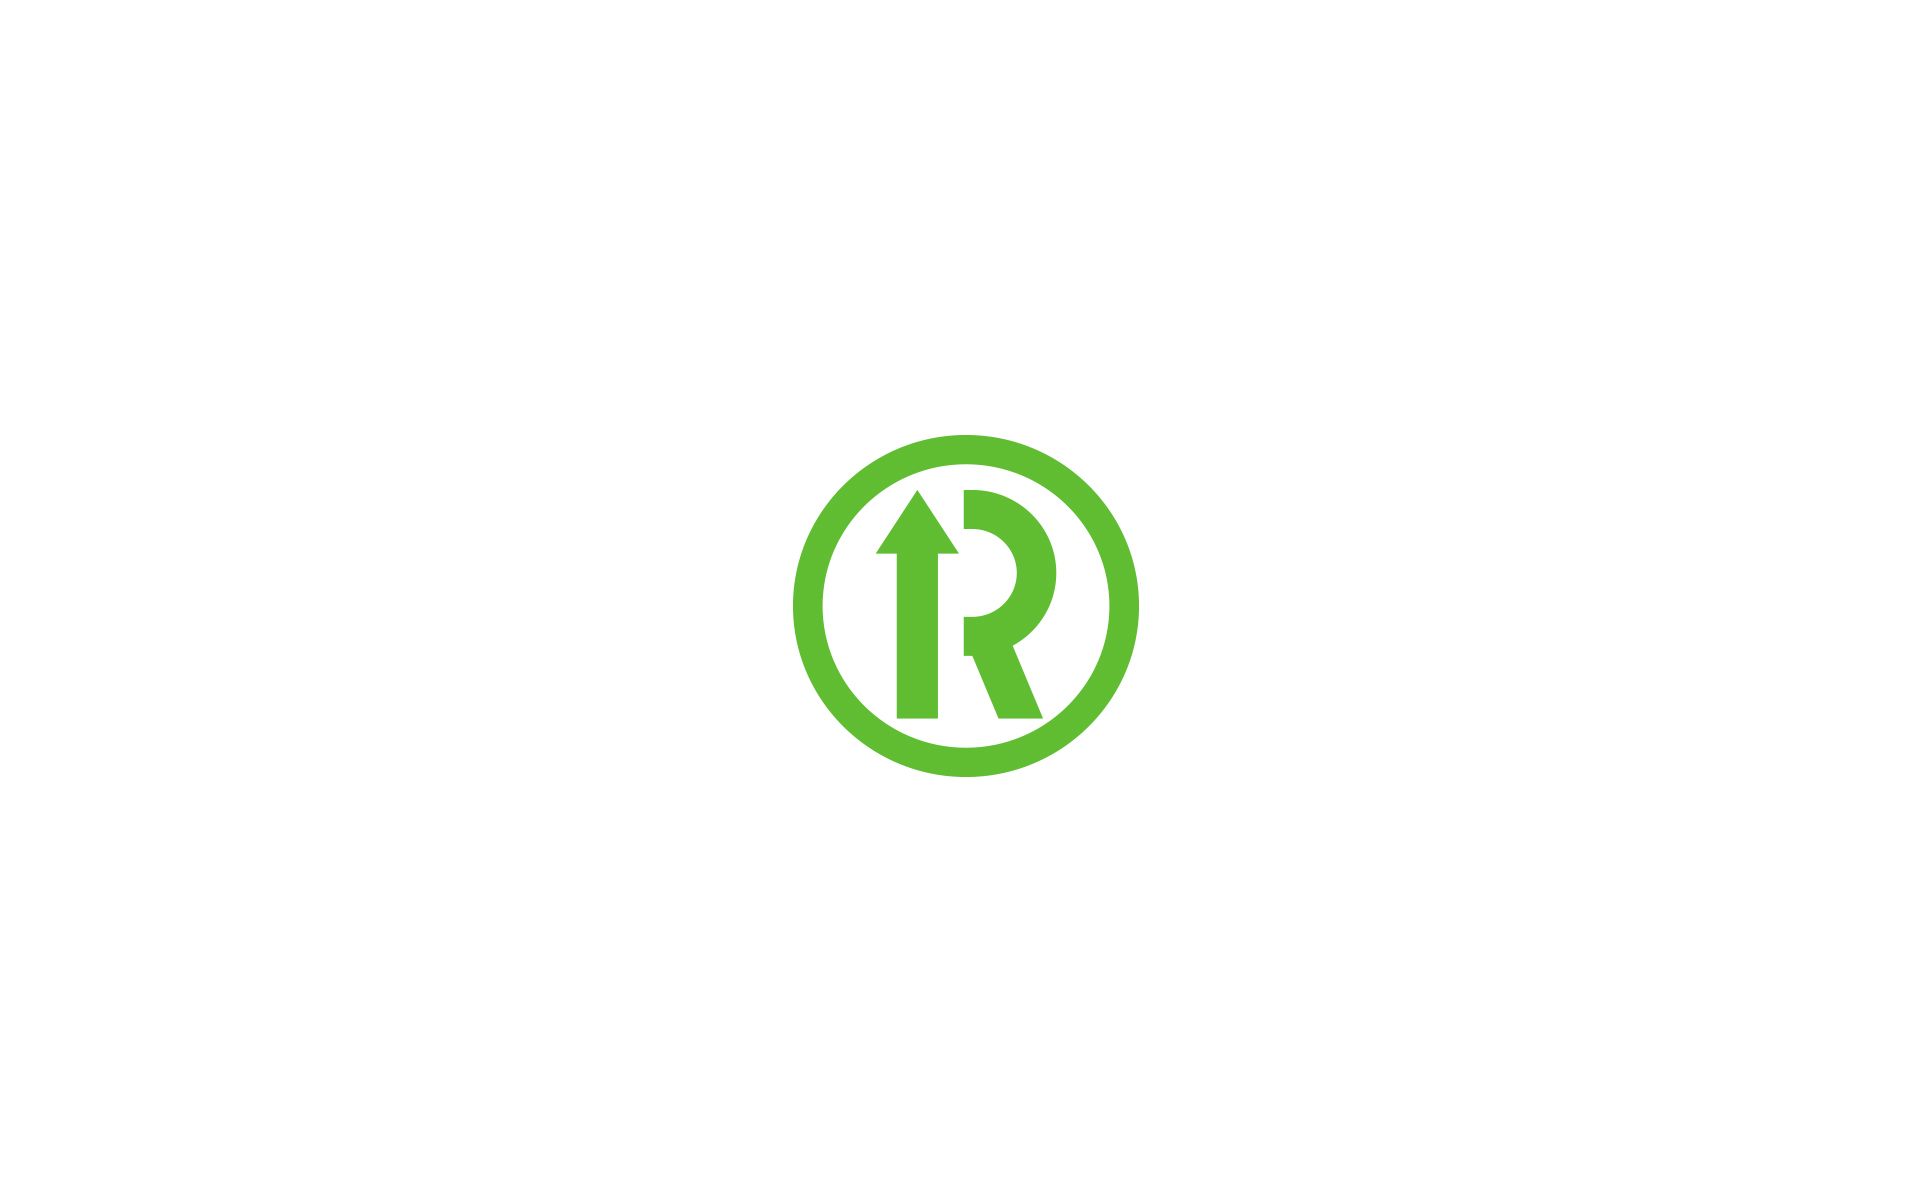 Фирменный стиль + лого для Rate Radar - дизайнер U4po4mak